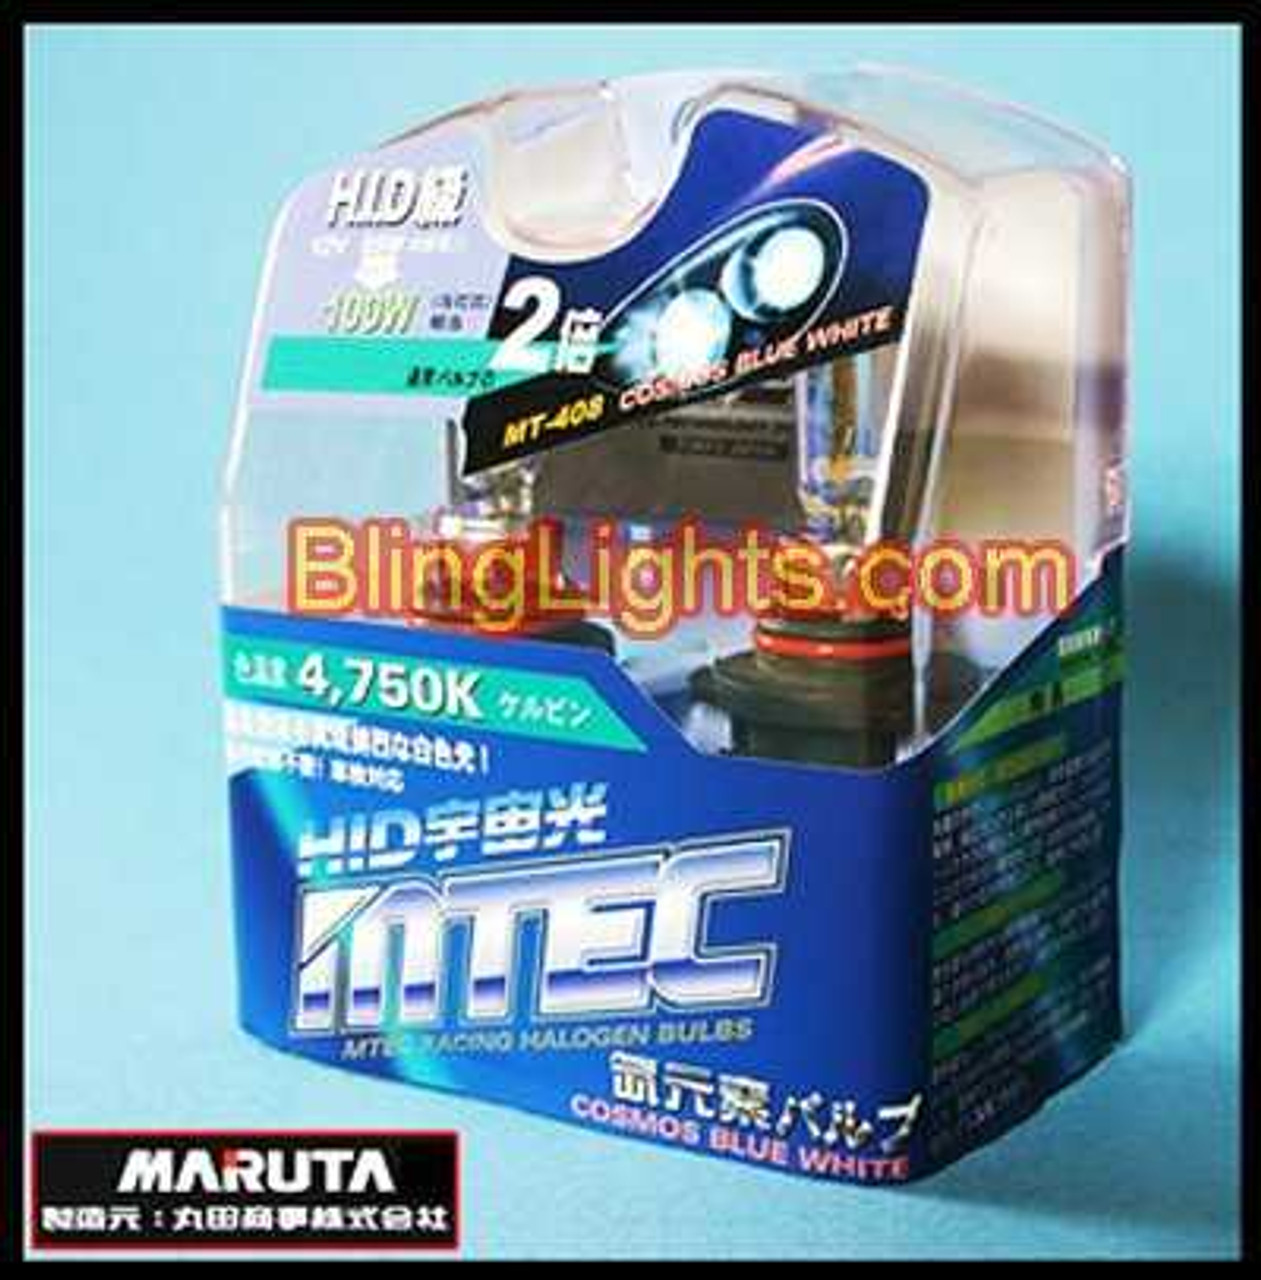 HB1 Xenon White Halogen Light Bulbs for Headlamps Headlights Head Lamps Lights Lamp Bulb